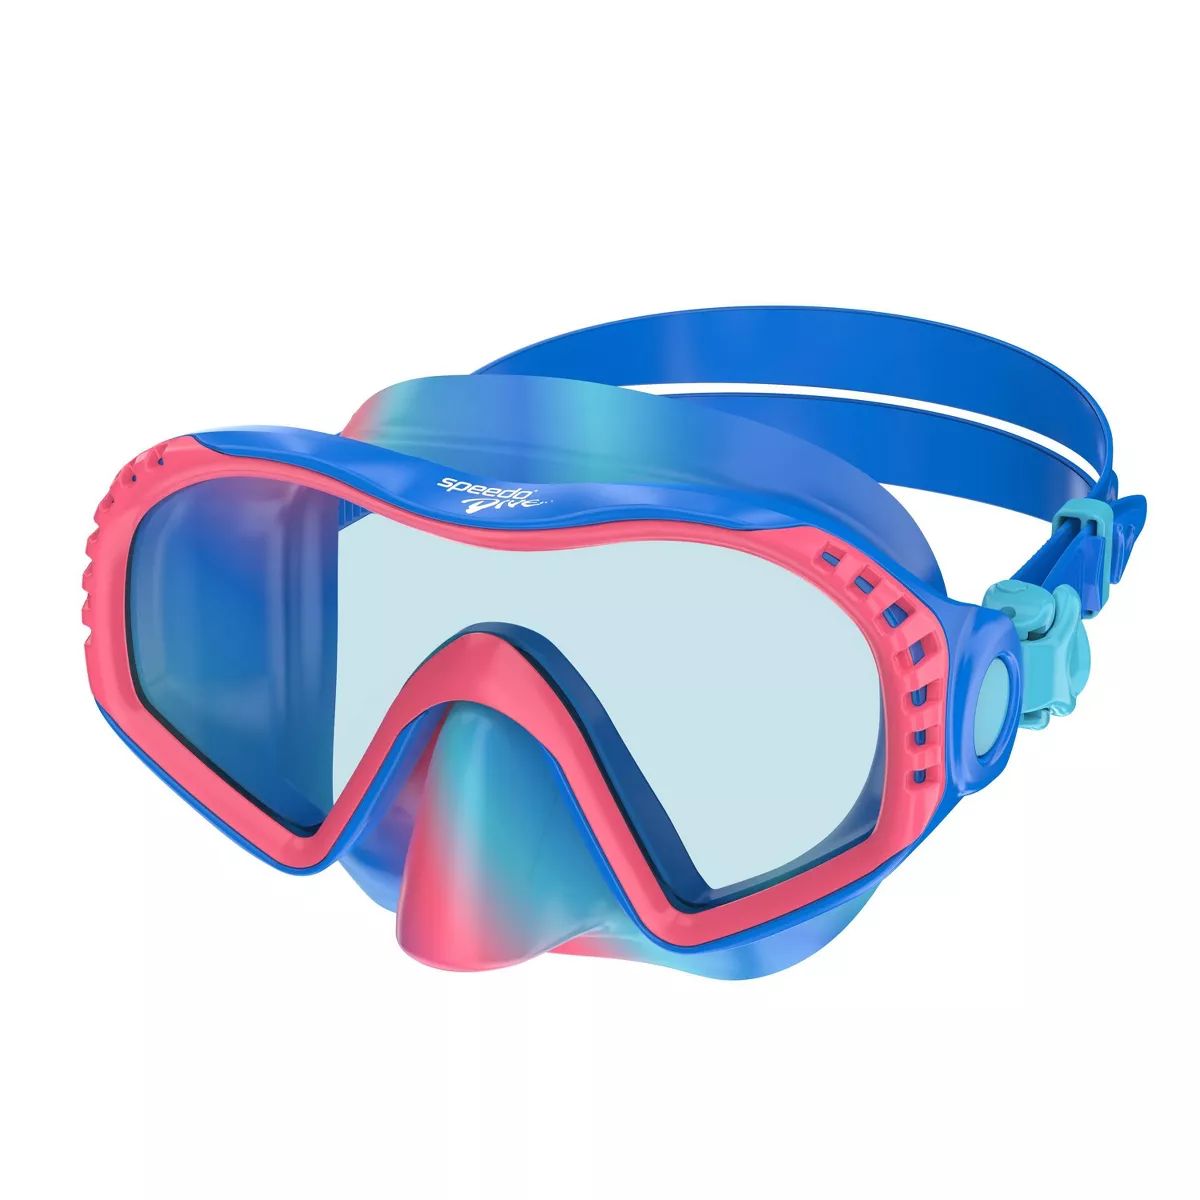 Speedo Junior Wave Watcher Goggles | Target